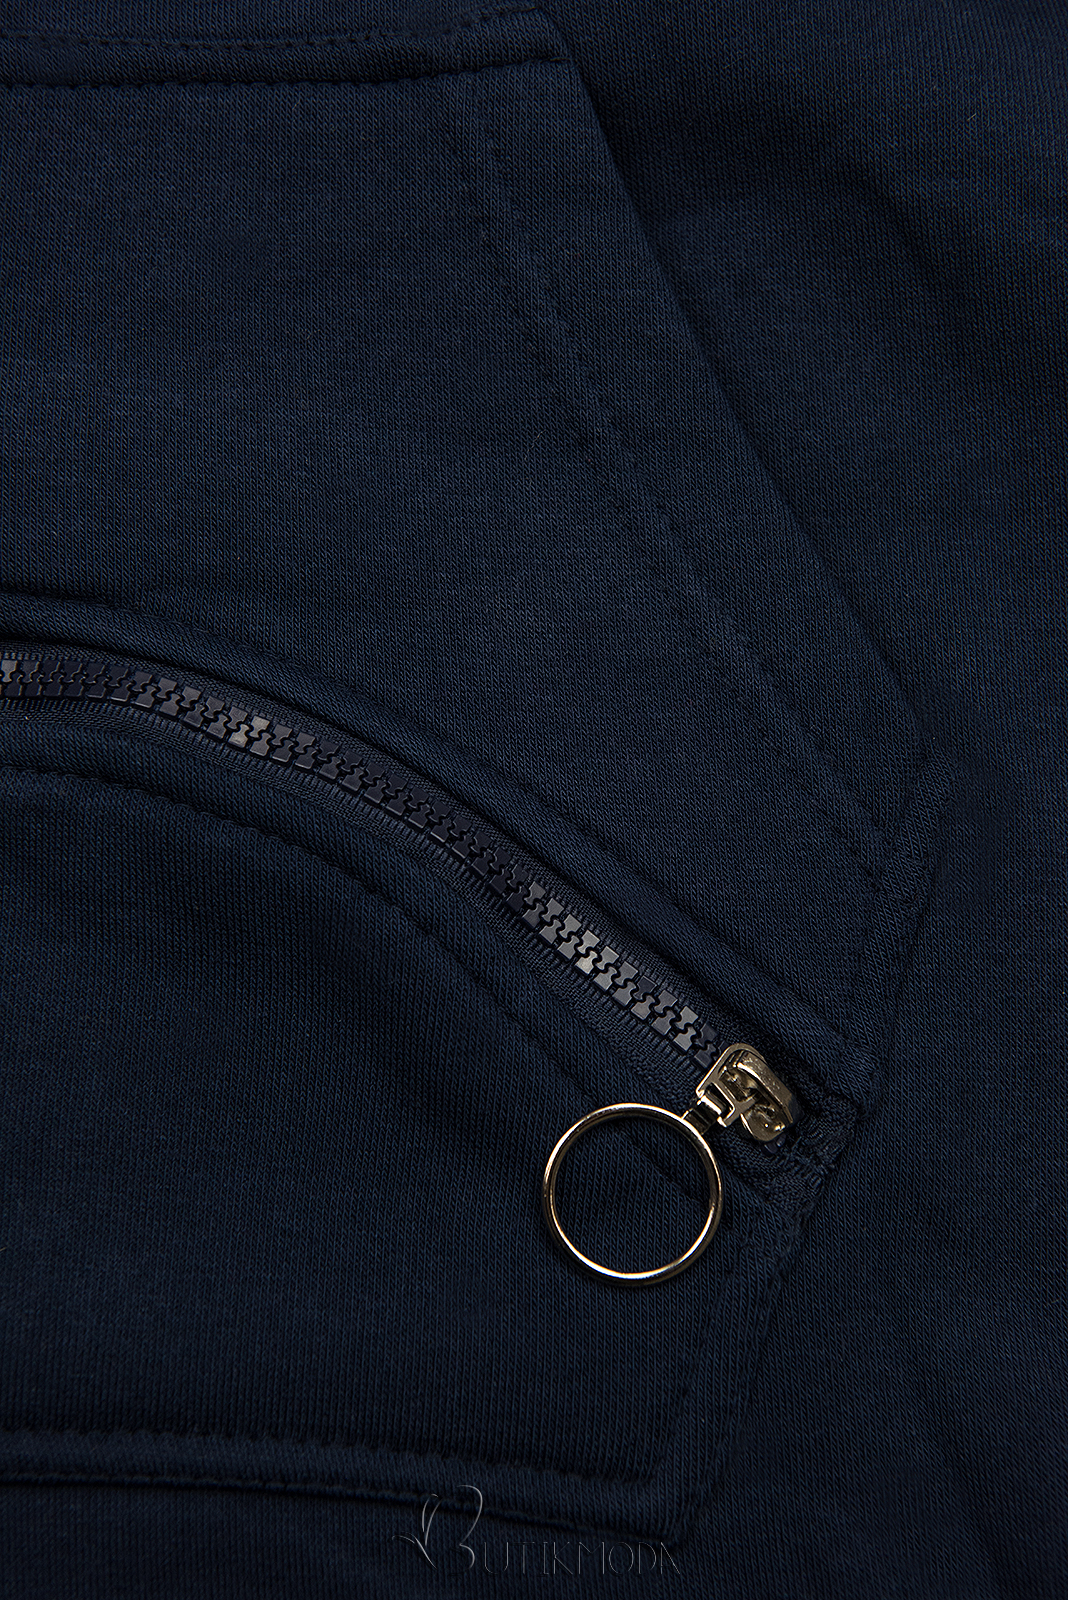 Verlängerte Sweatshirt/Sweatkleid dunkelblau/blau